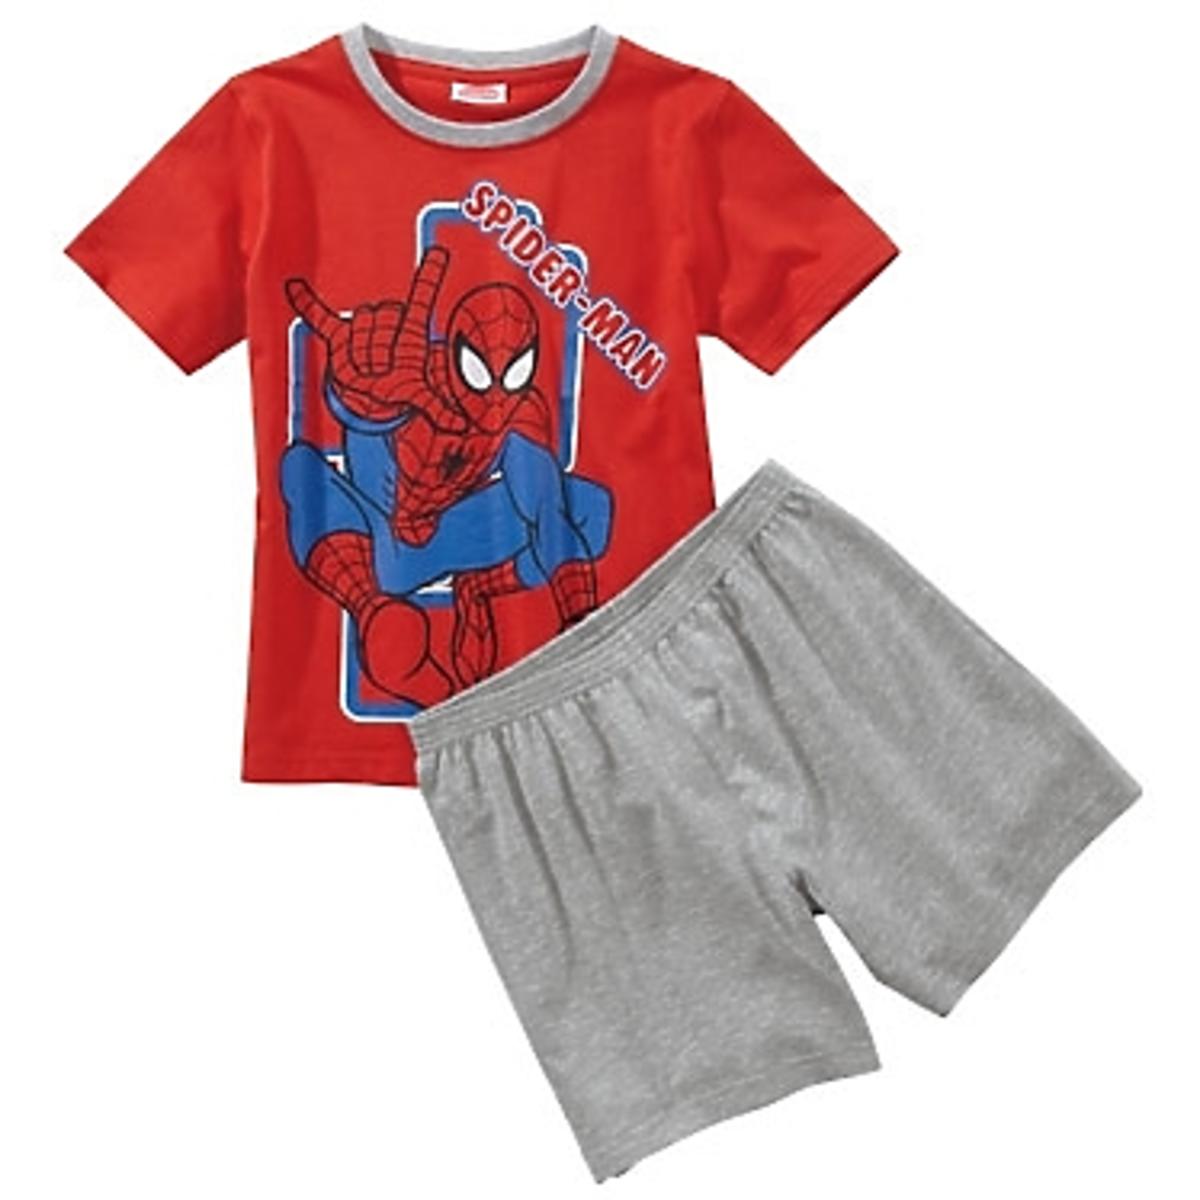 piżama dla chłopca, piżama dla dziecka, promocje Lidl